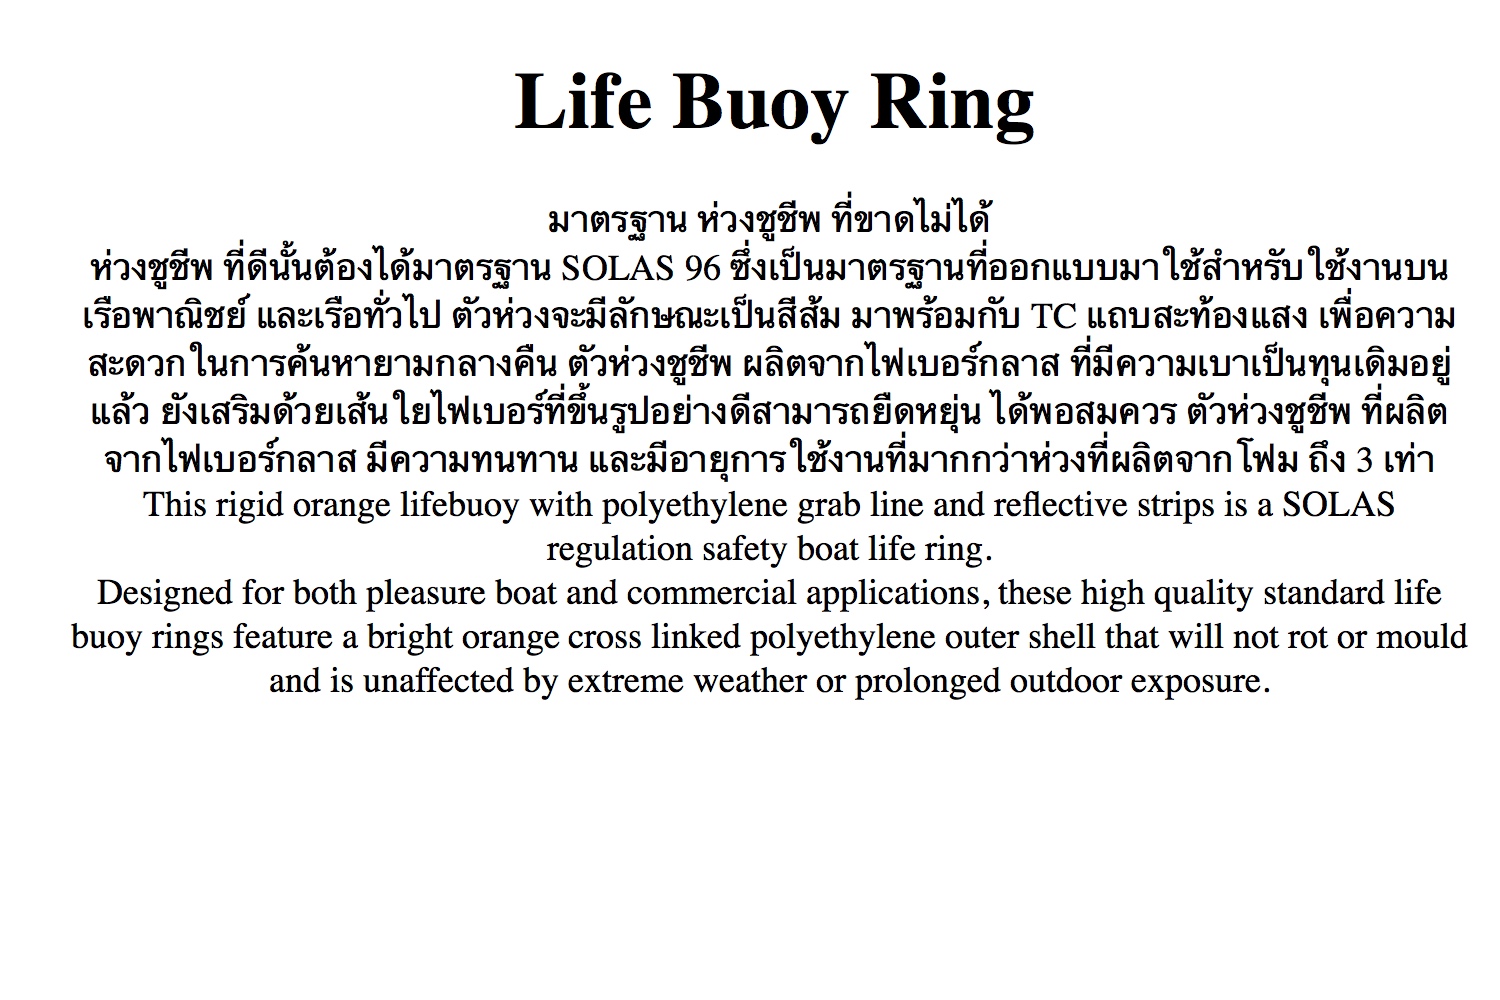 ข้อมูลประกอบของ ห่วงชูชีพ ไฟเบอร์กราส ตามมาตรฐาน SOLAS Life Buoy Ring